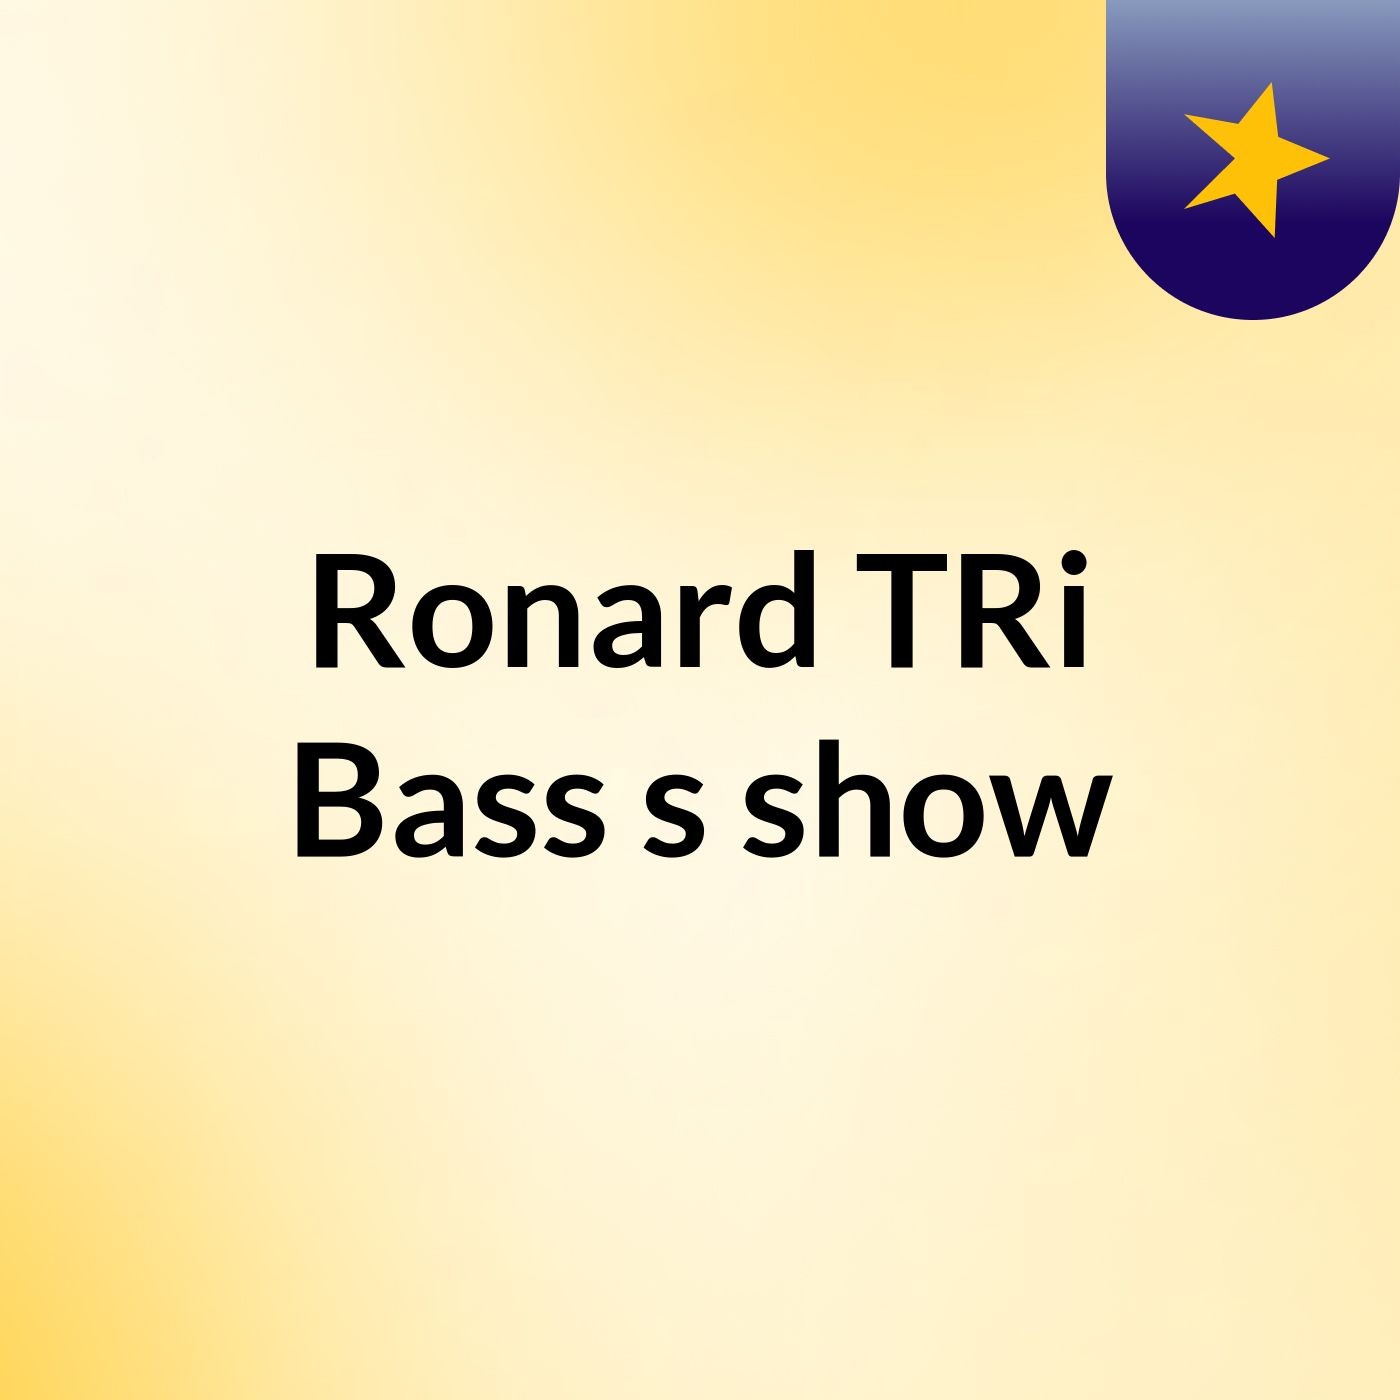 Ronard TRi Bass's show